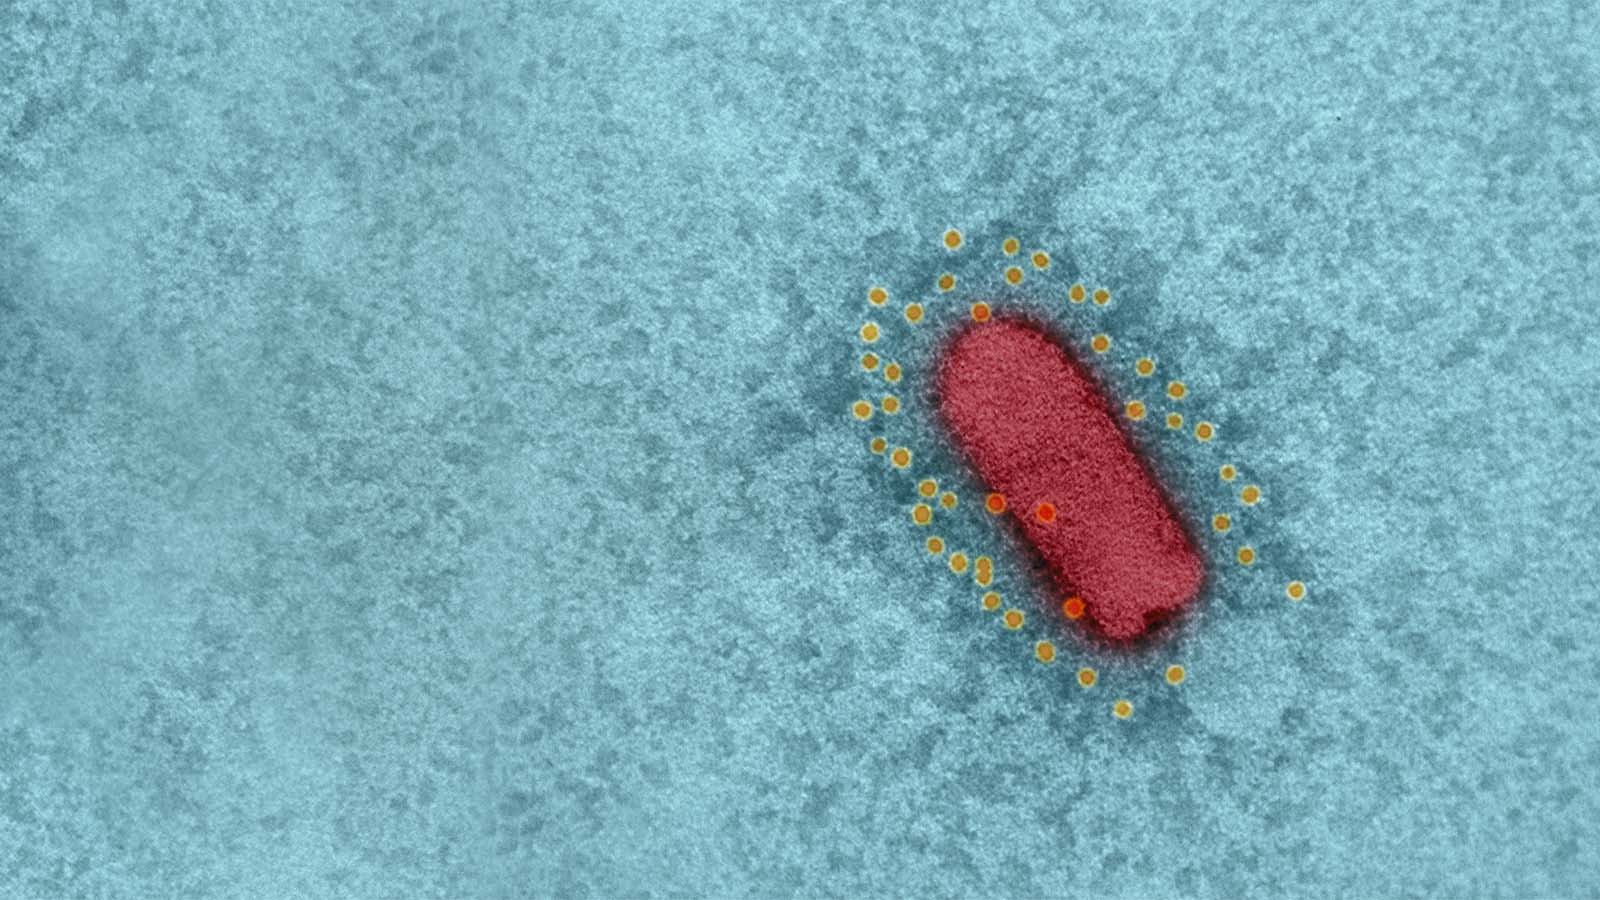 צילום מיקרוסקופי של החיסון לקורונה של המכון הביולוגי (צילום: משרד הביטחון והמכון למחקר ביולוגי)